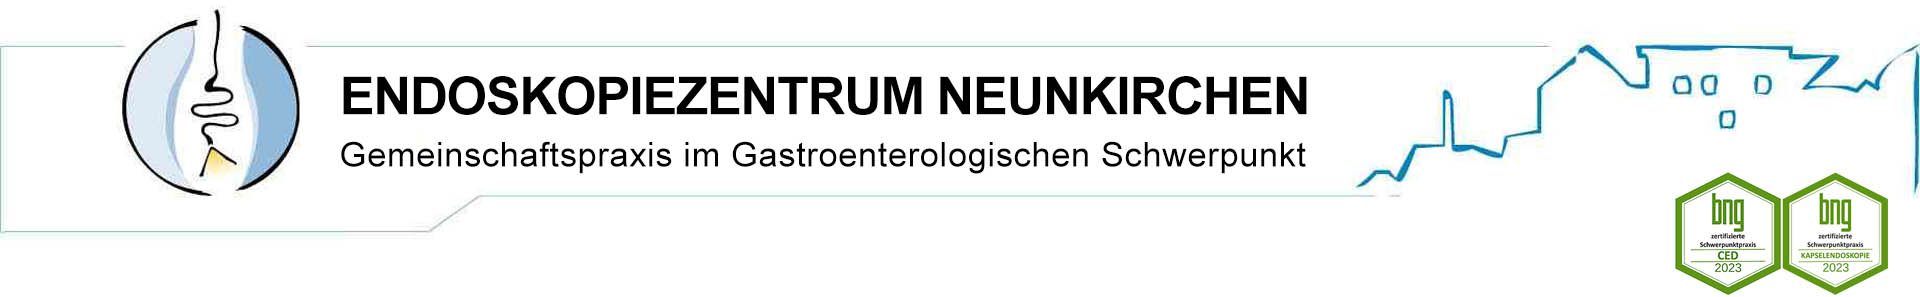 Endoskopiezentrum Neunkirchen; Gemeinschaftspraxis im Gastroenterologischen Schwerpunkt